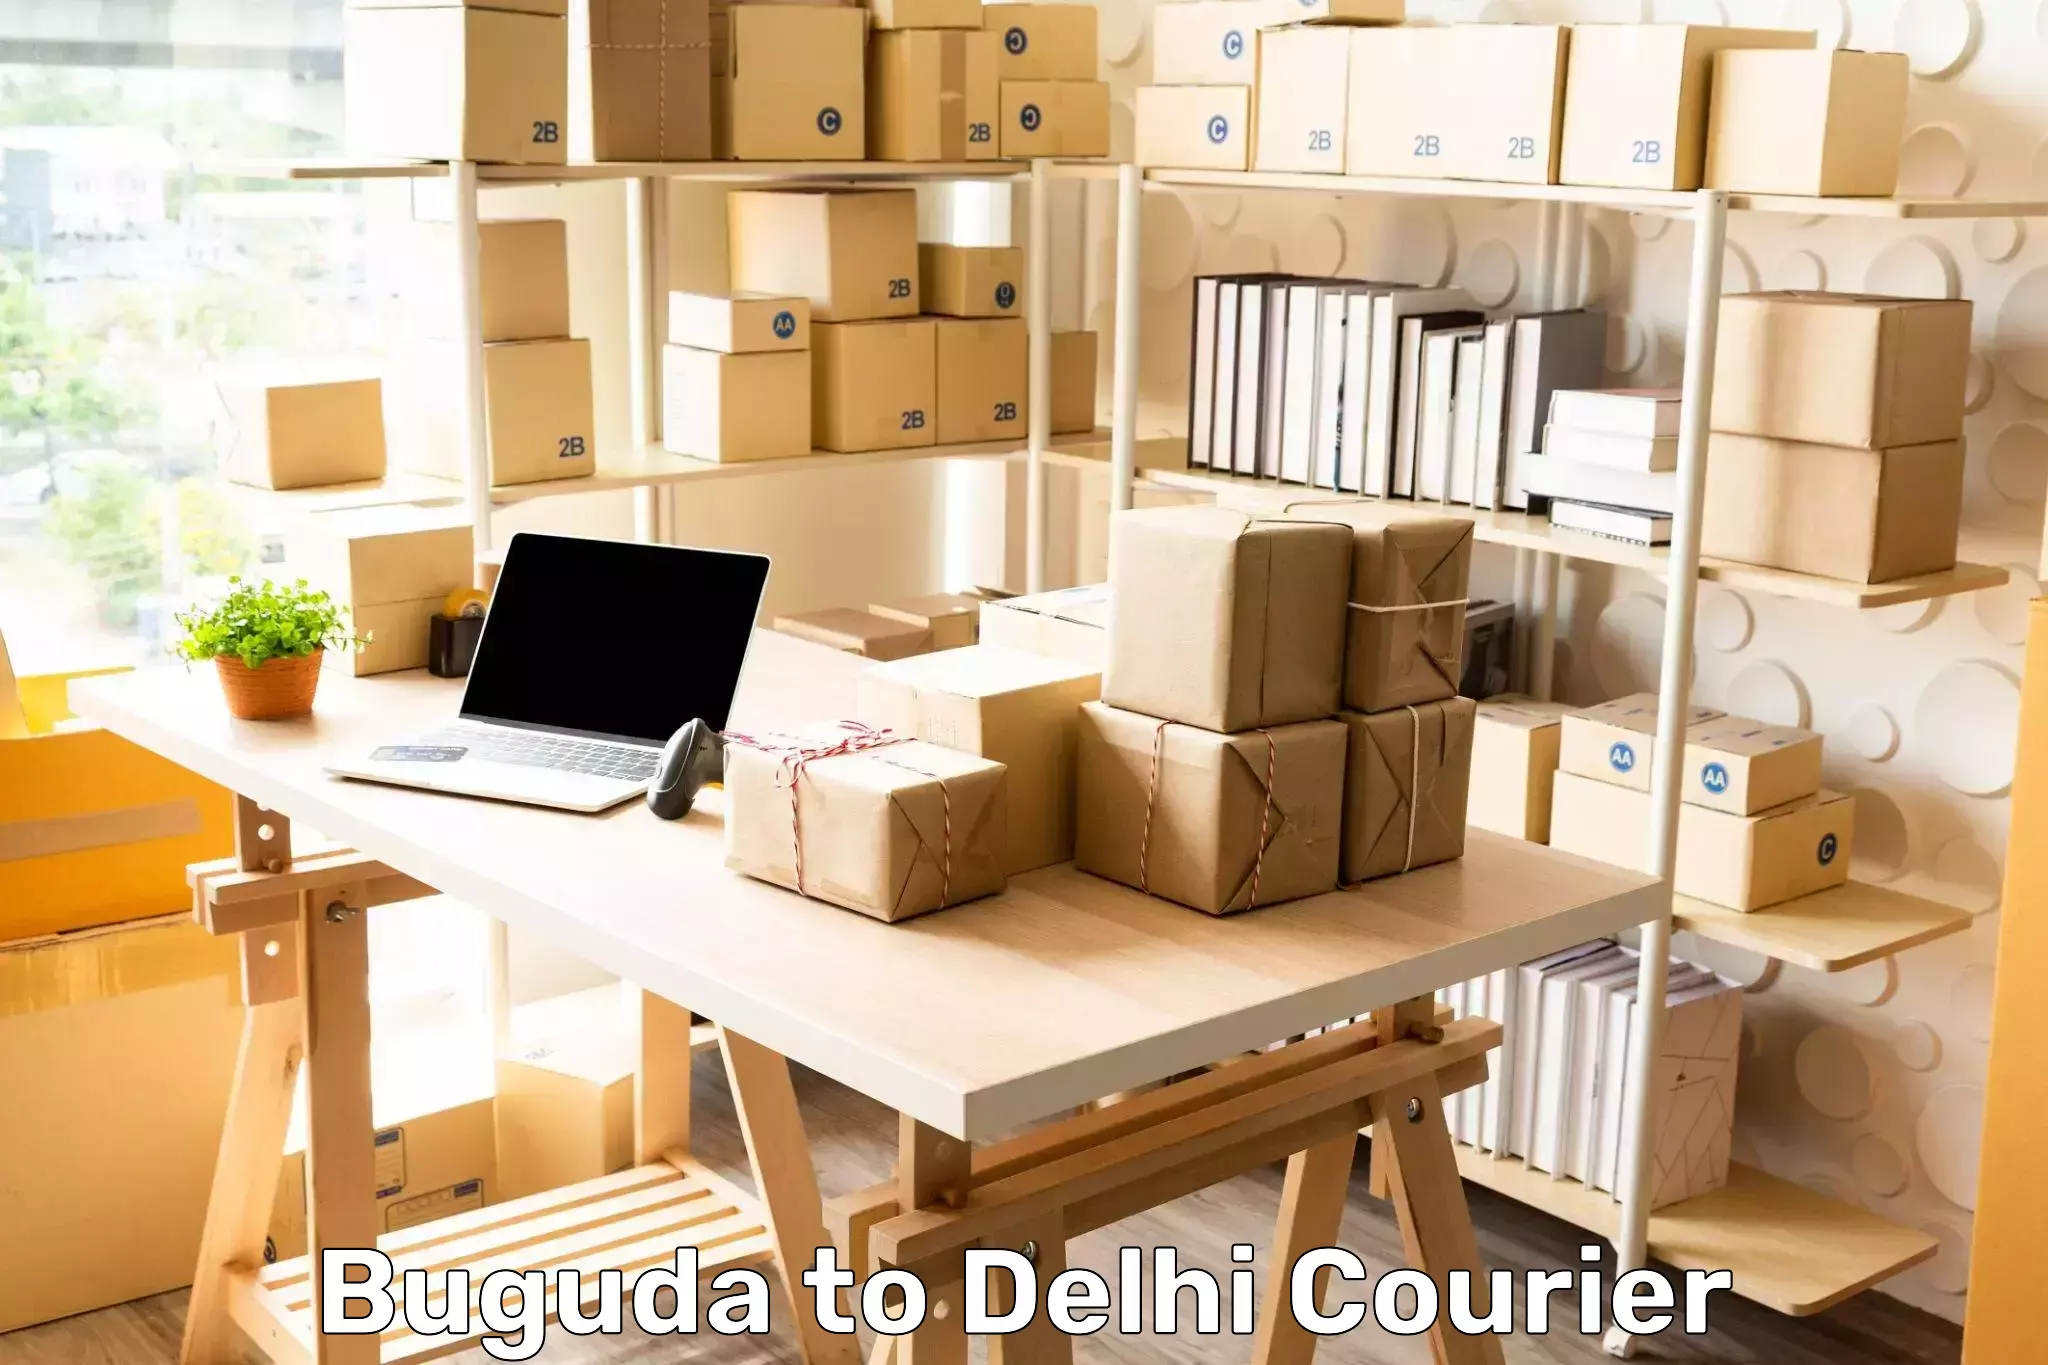 Digital courier platforms Buguda to Indraprastha